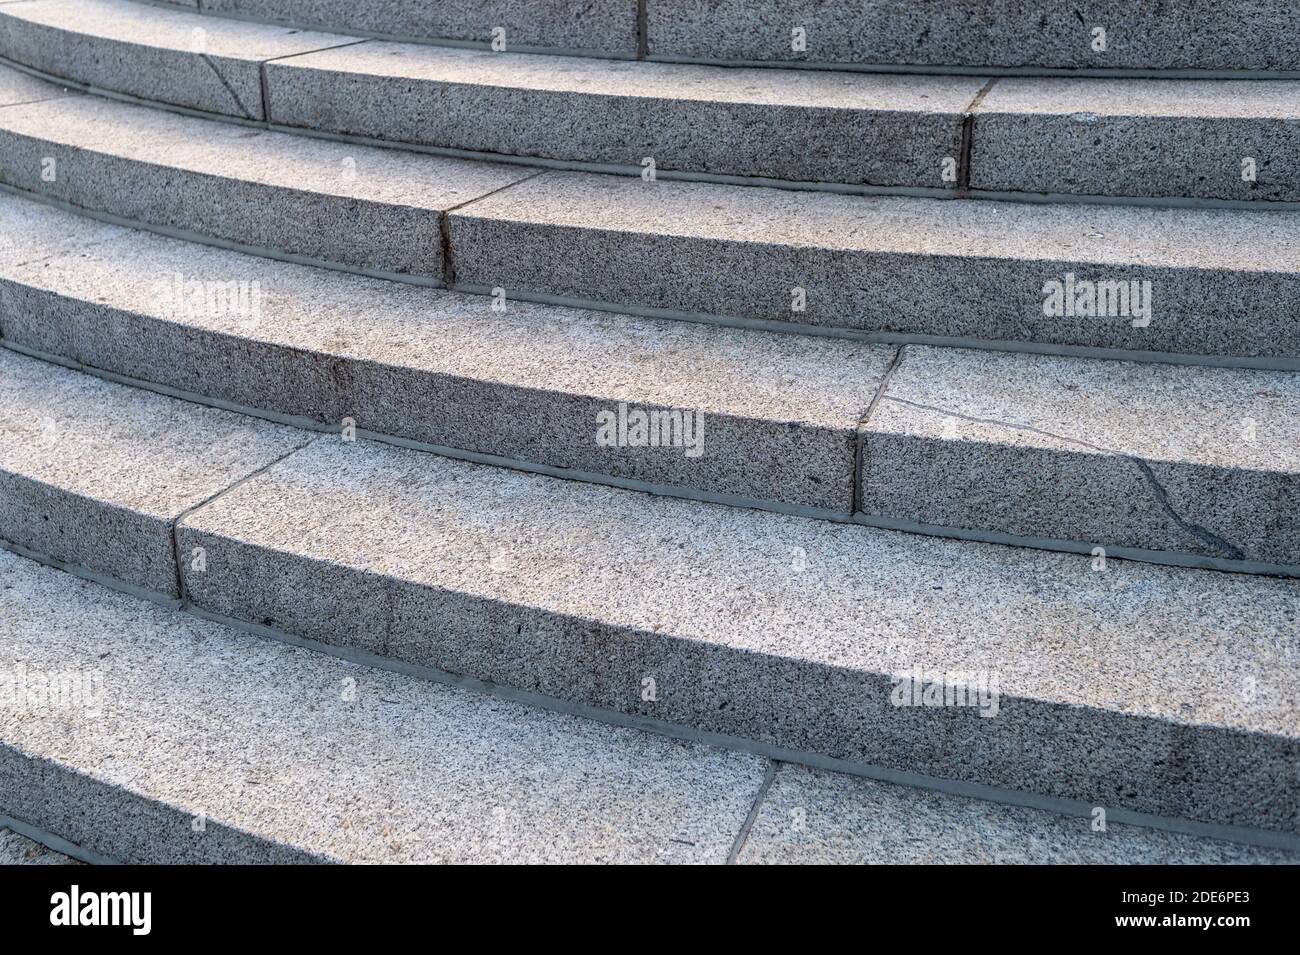 Gros plan de marches en pierre de granit, concept de fond. Banque D'Images